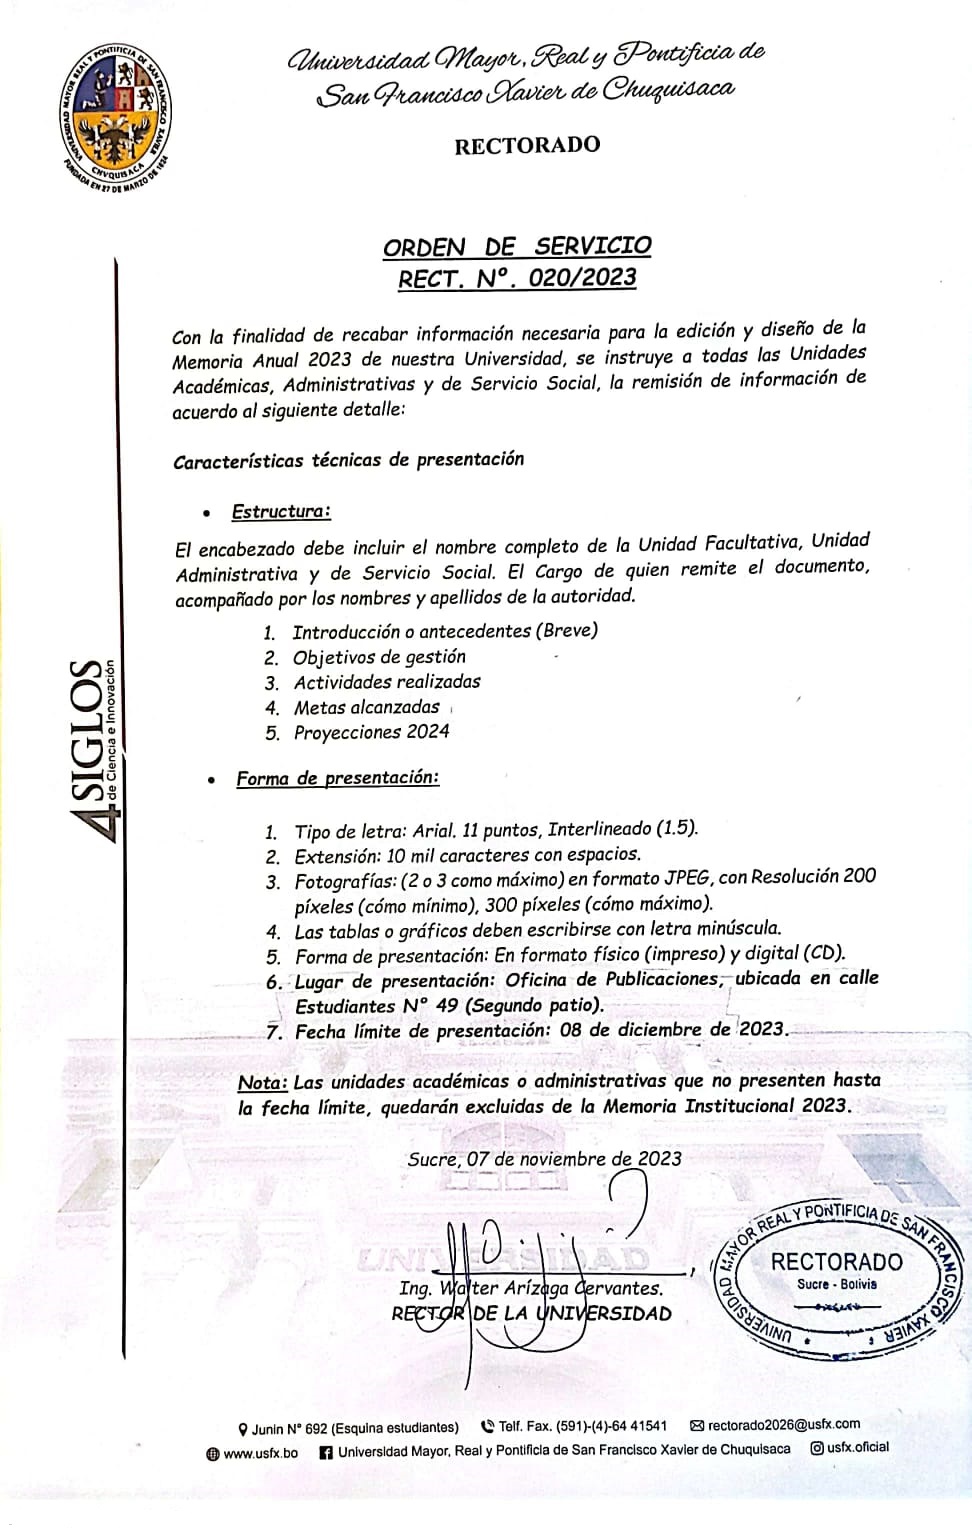 ORDEN DE SERVICIO RECTORAL. Nº 020/2023, MEMORIA ANUAL 2023.